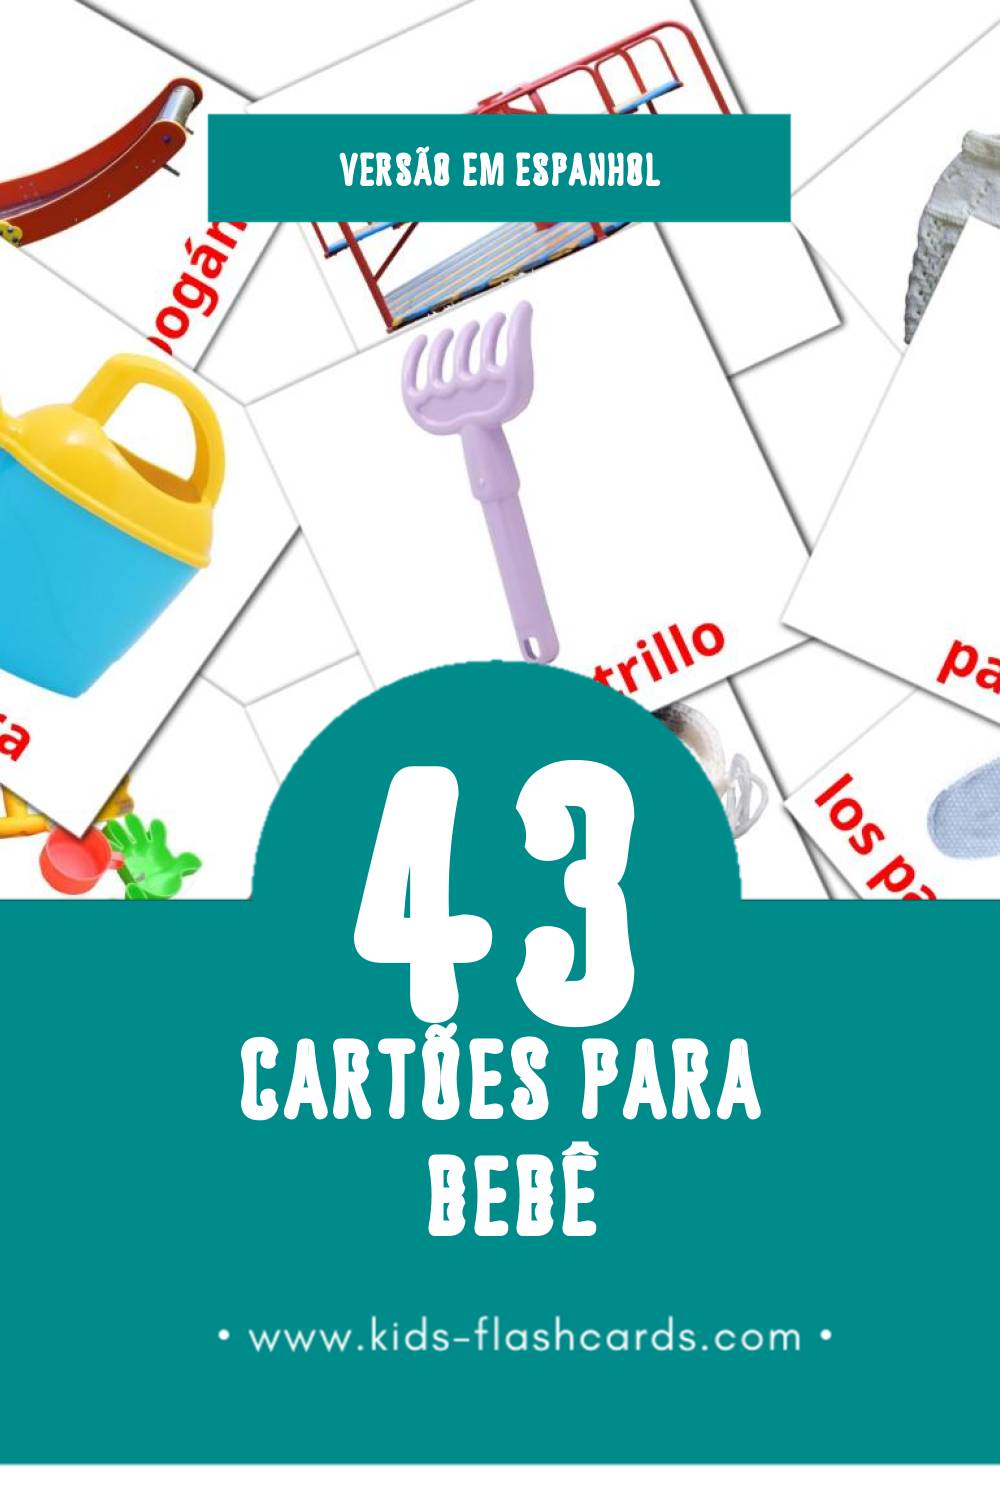 Flashcards de Bebé Visuais para Toddlers (43 cartões em Espanhol)